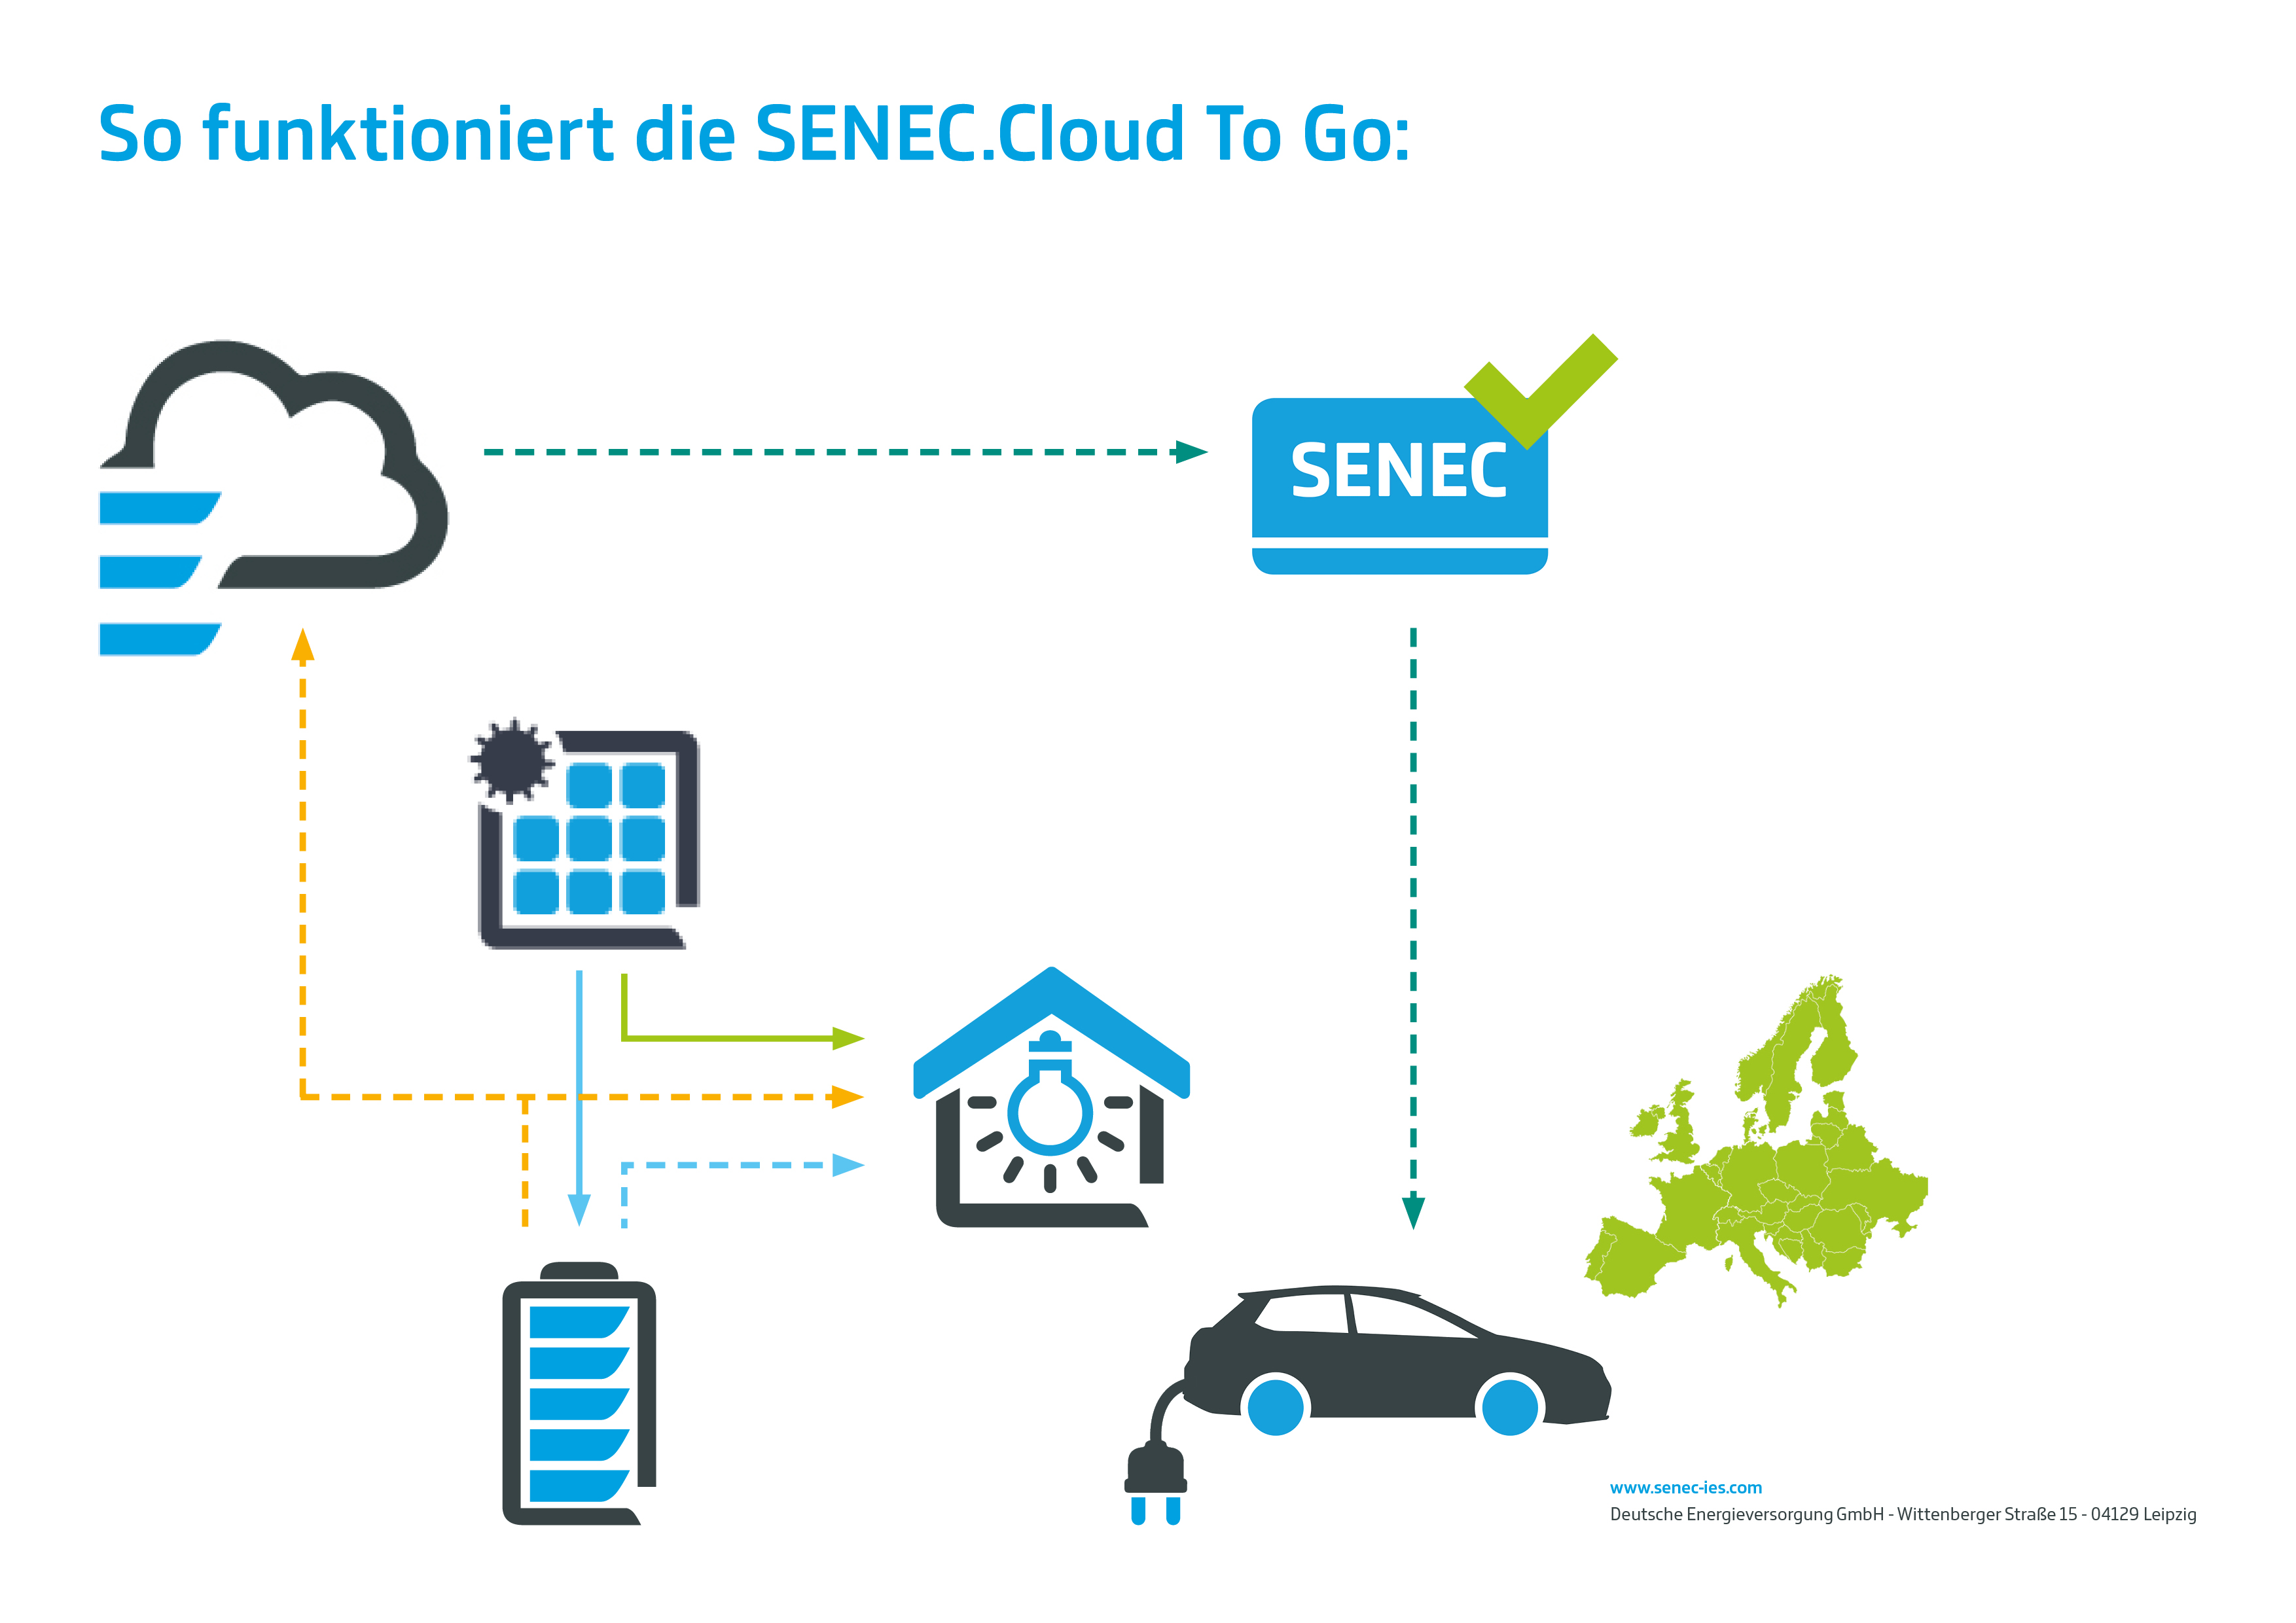 SENEC.Cloud To Go